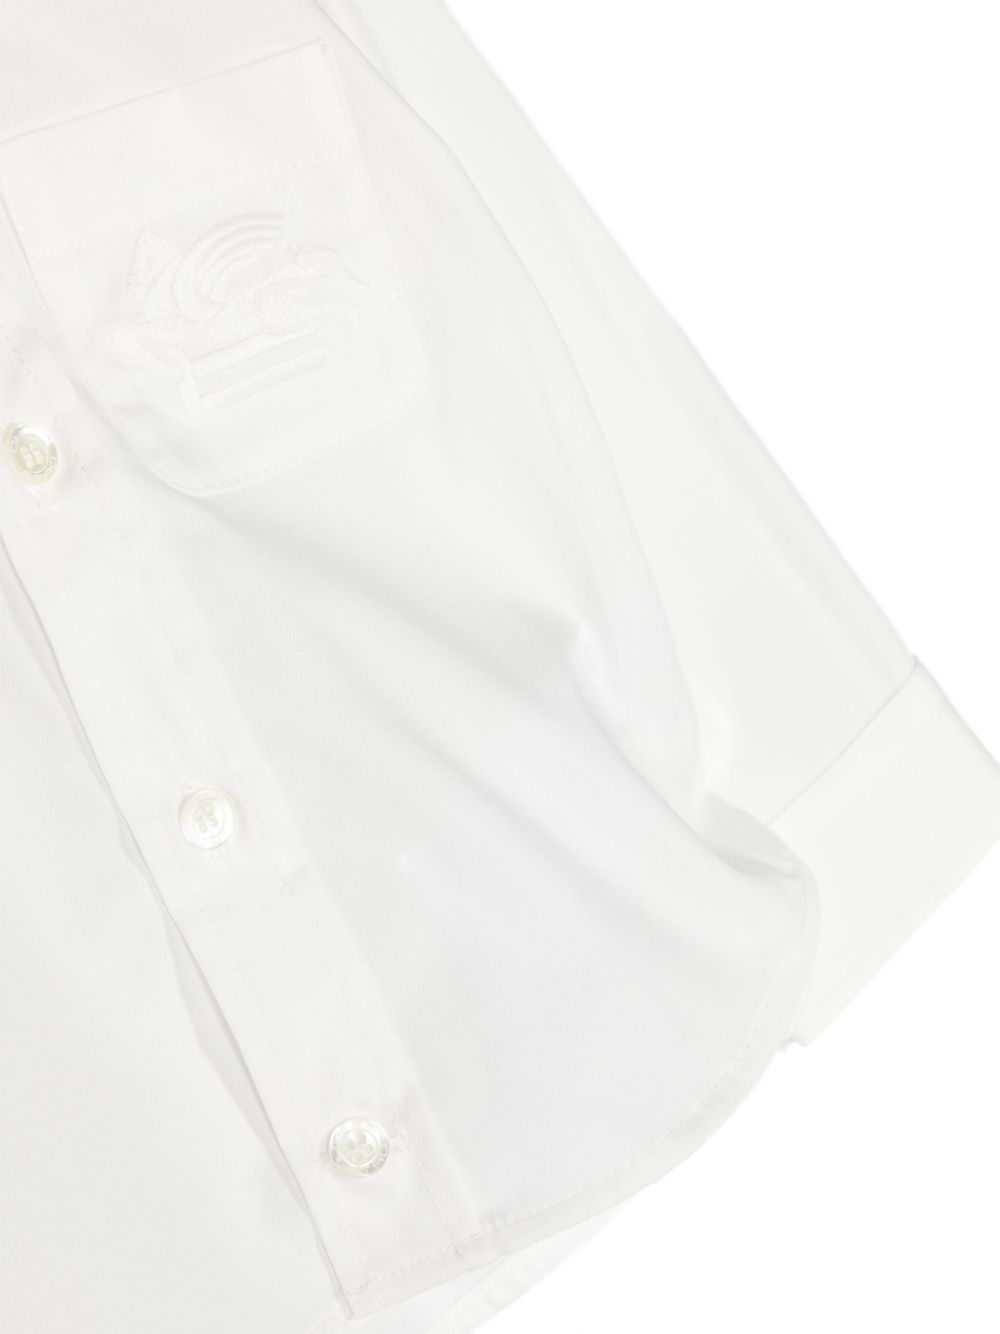 Camicia neonato bianca